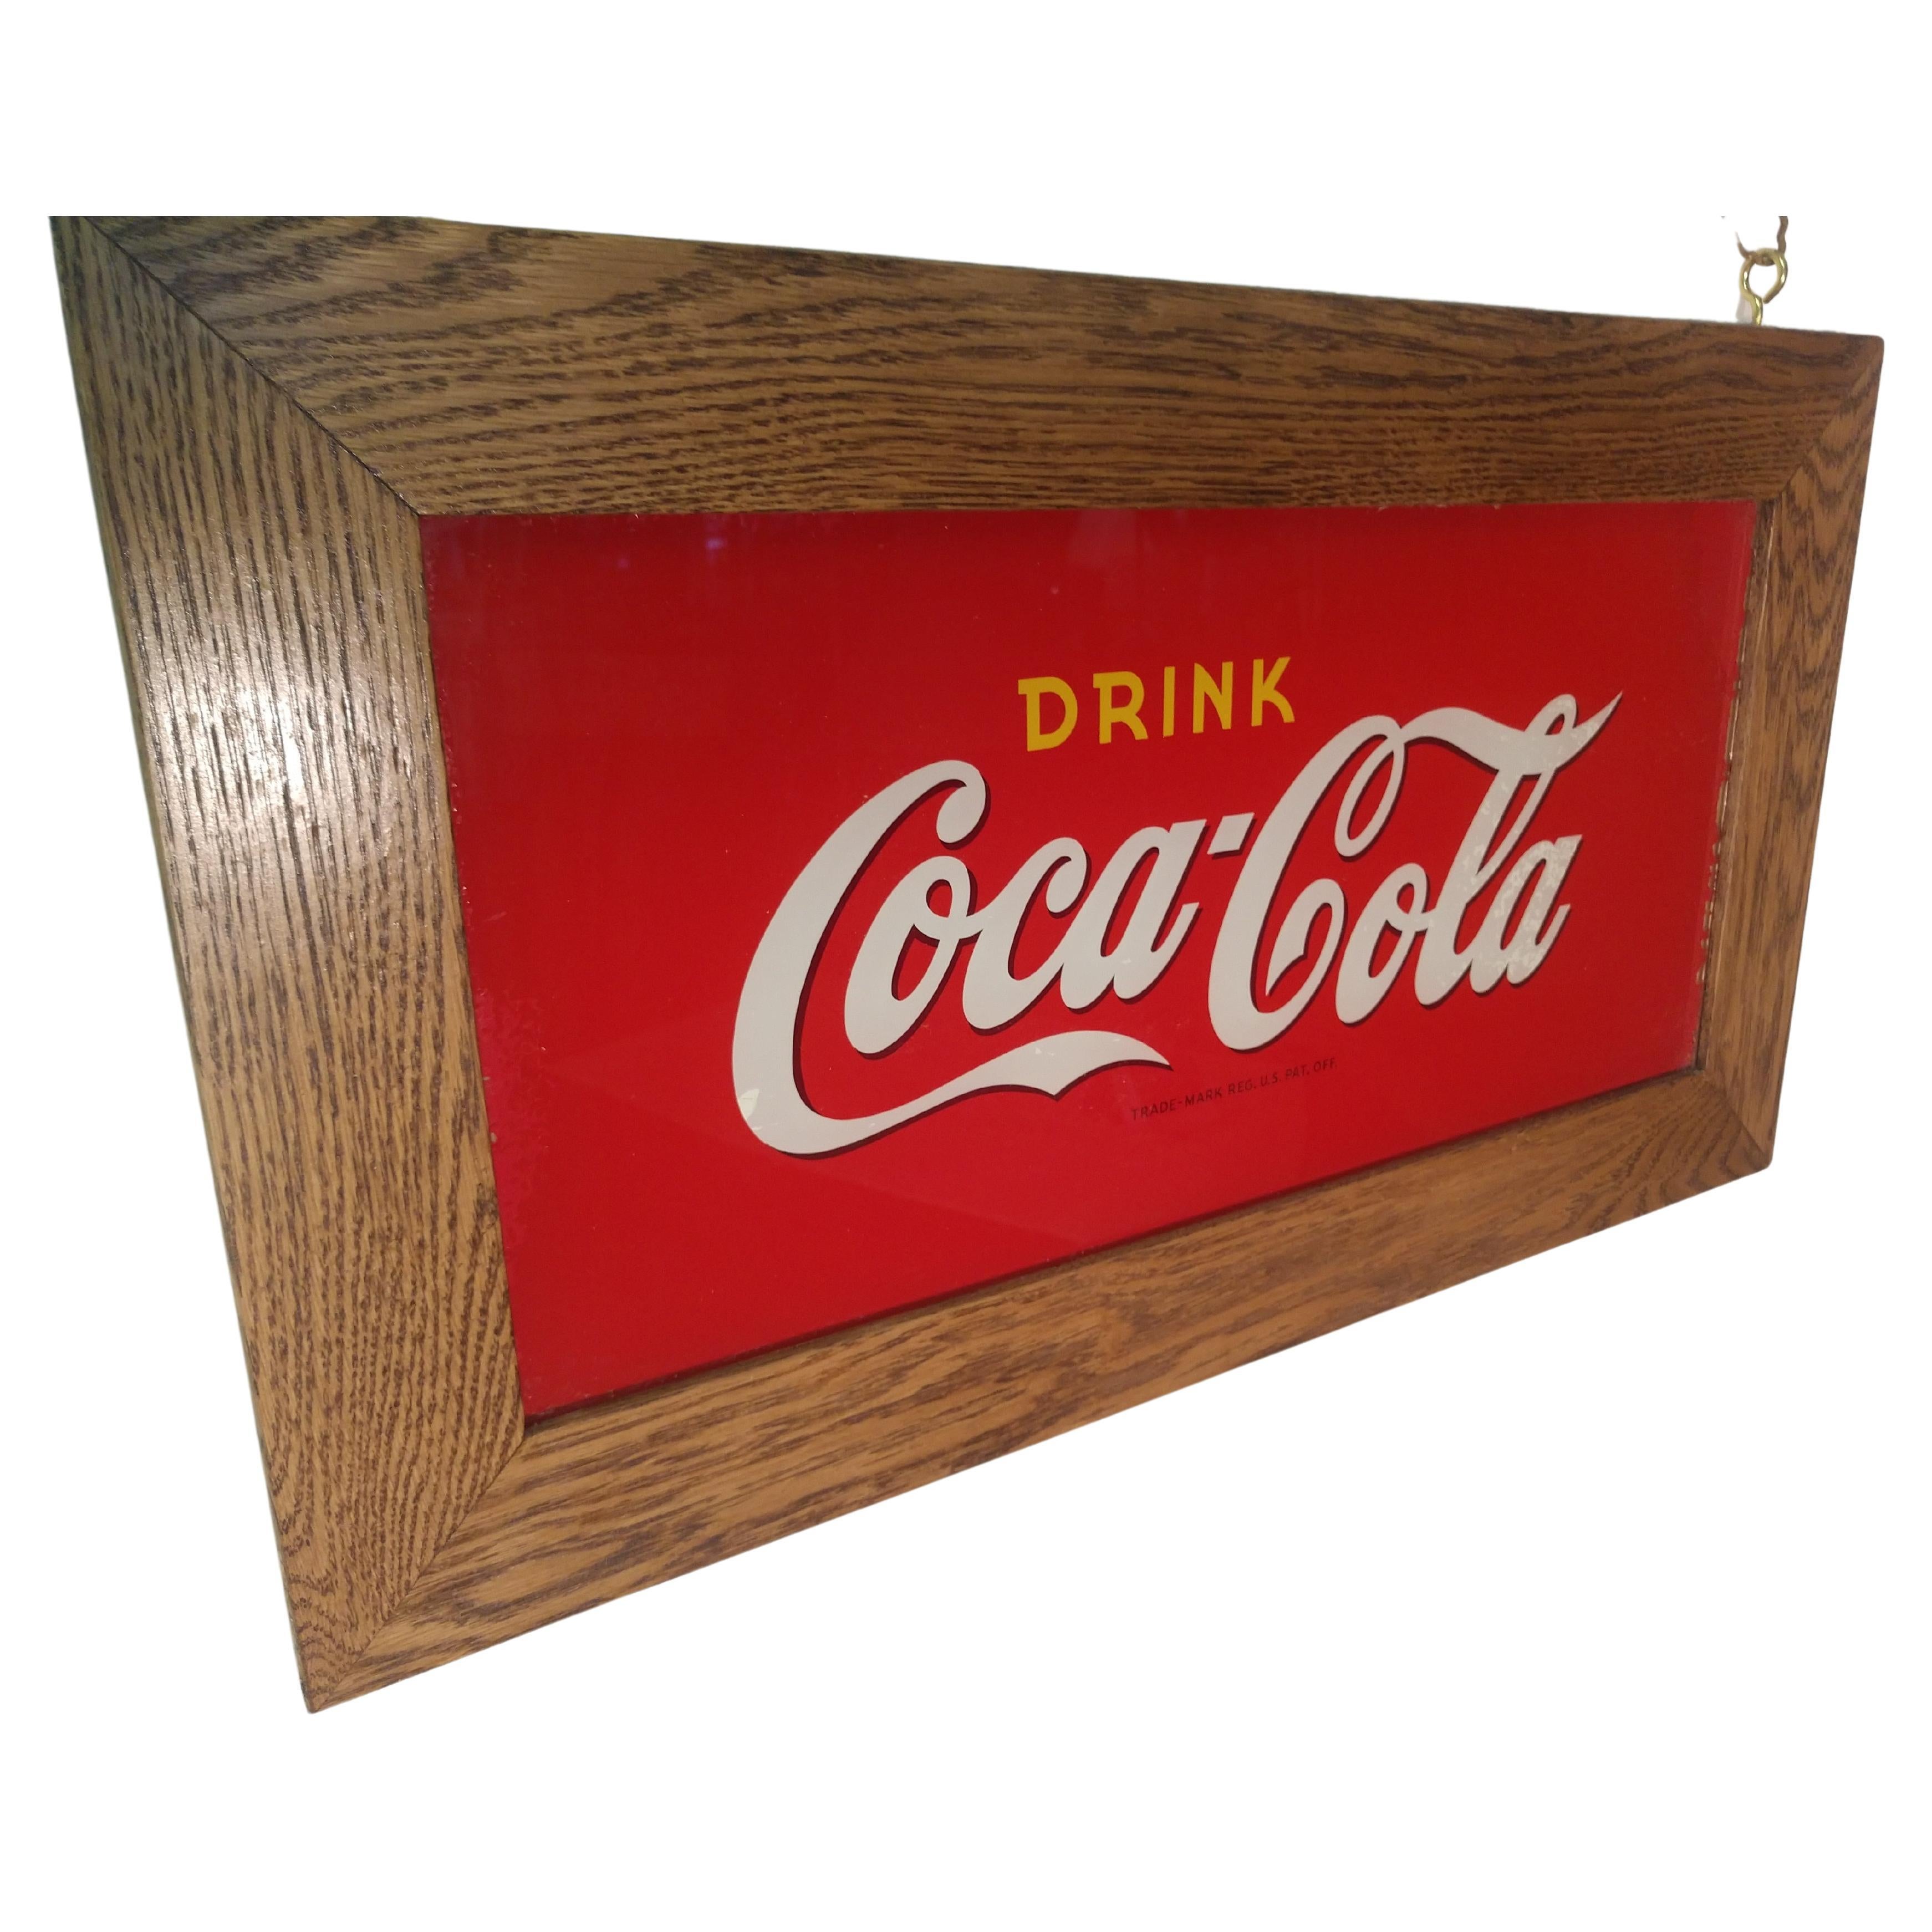 Fabulous 10 x 21 umgekehrt gemalt Glas Coca Cola Zeichen aus den zwanziger Jahren. In ausgezeichnetem Vintage-Zustand mit einer kleinen Fixierung in der oberen rechten Ecke. Hergestellt von den Gebrüdern Price aus Chicago für die Coca Cola